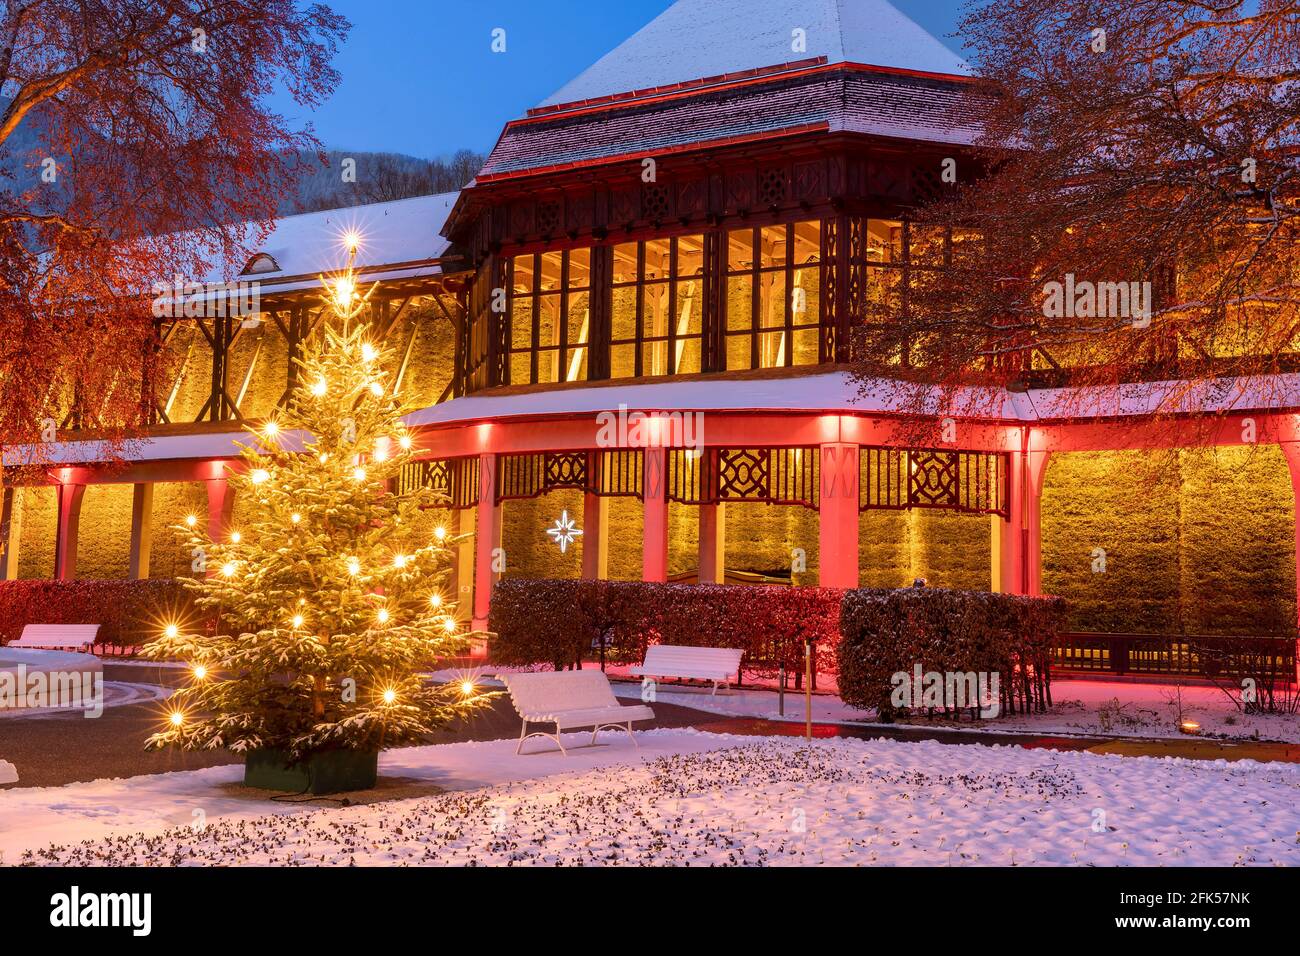 Hiver - Weihnacht im abendlich-nächtlich-beleuchteten Kurgarten von Bad Reichenhall Banque D'Images